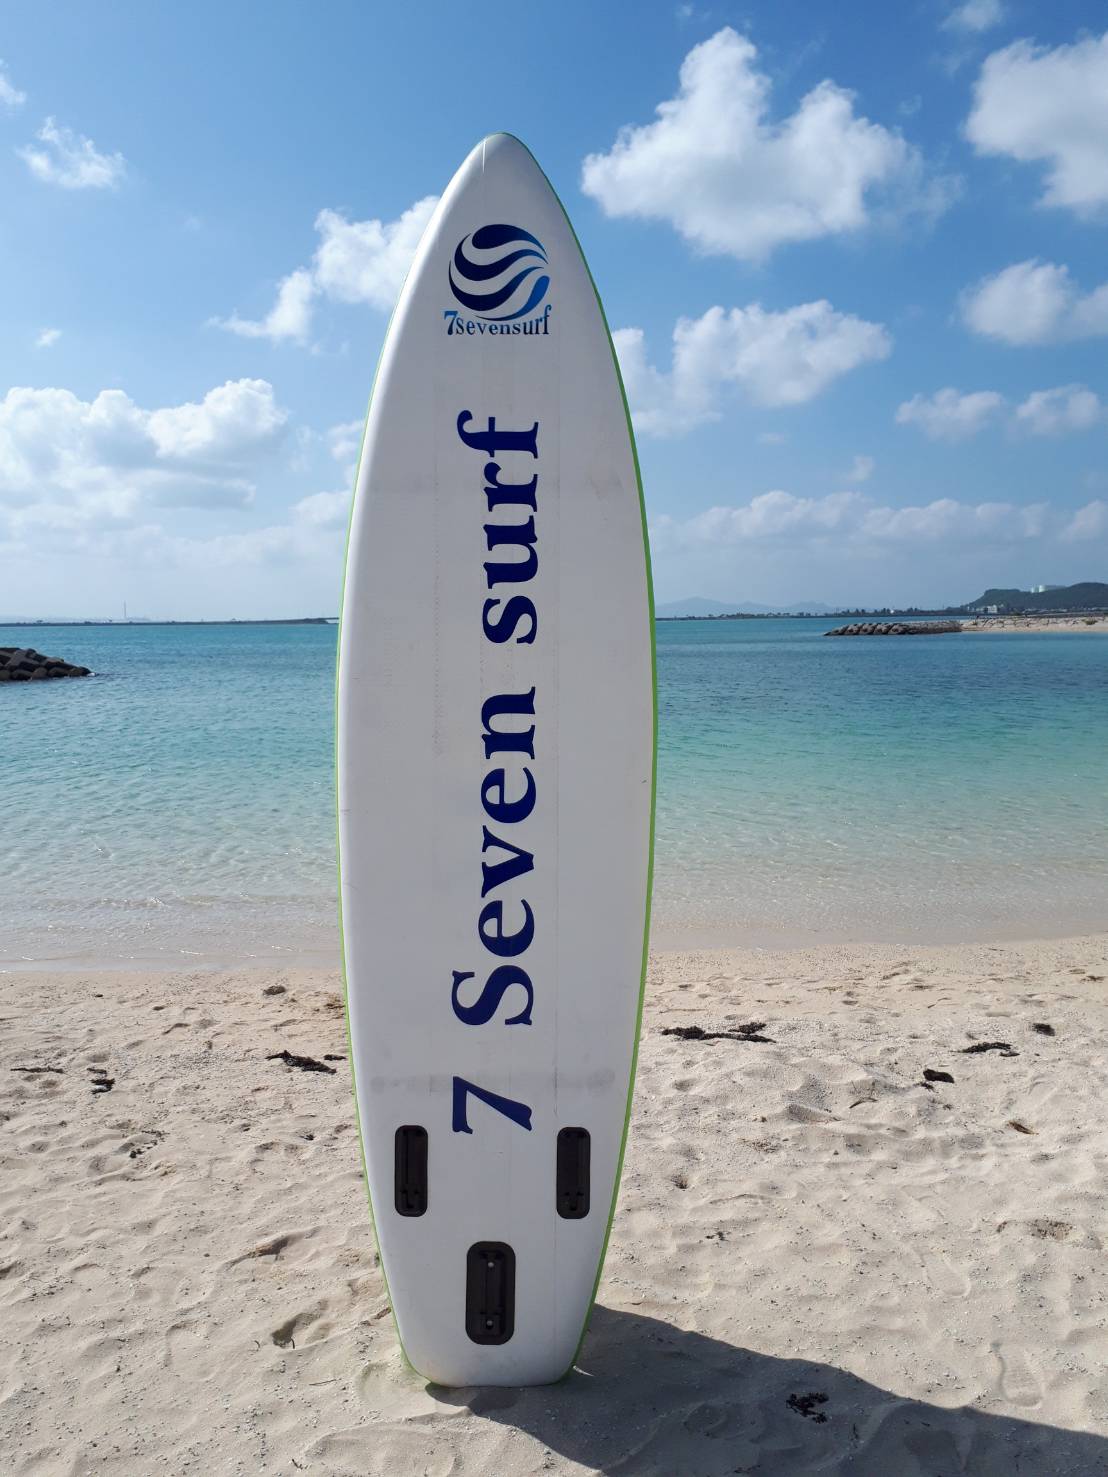 SEVEN SURF 公式サイト | 7SURF.comは、スタンドアップパドルボードの